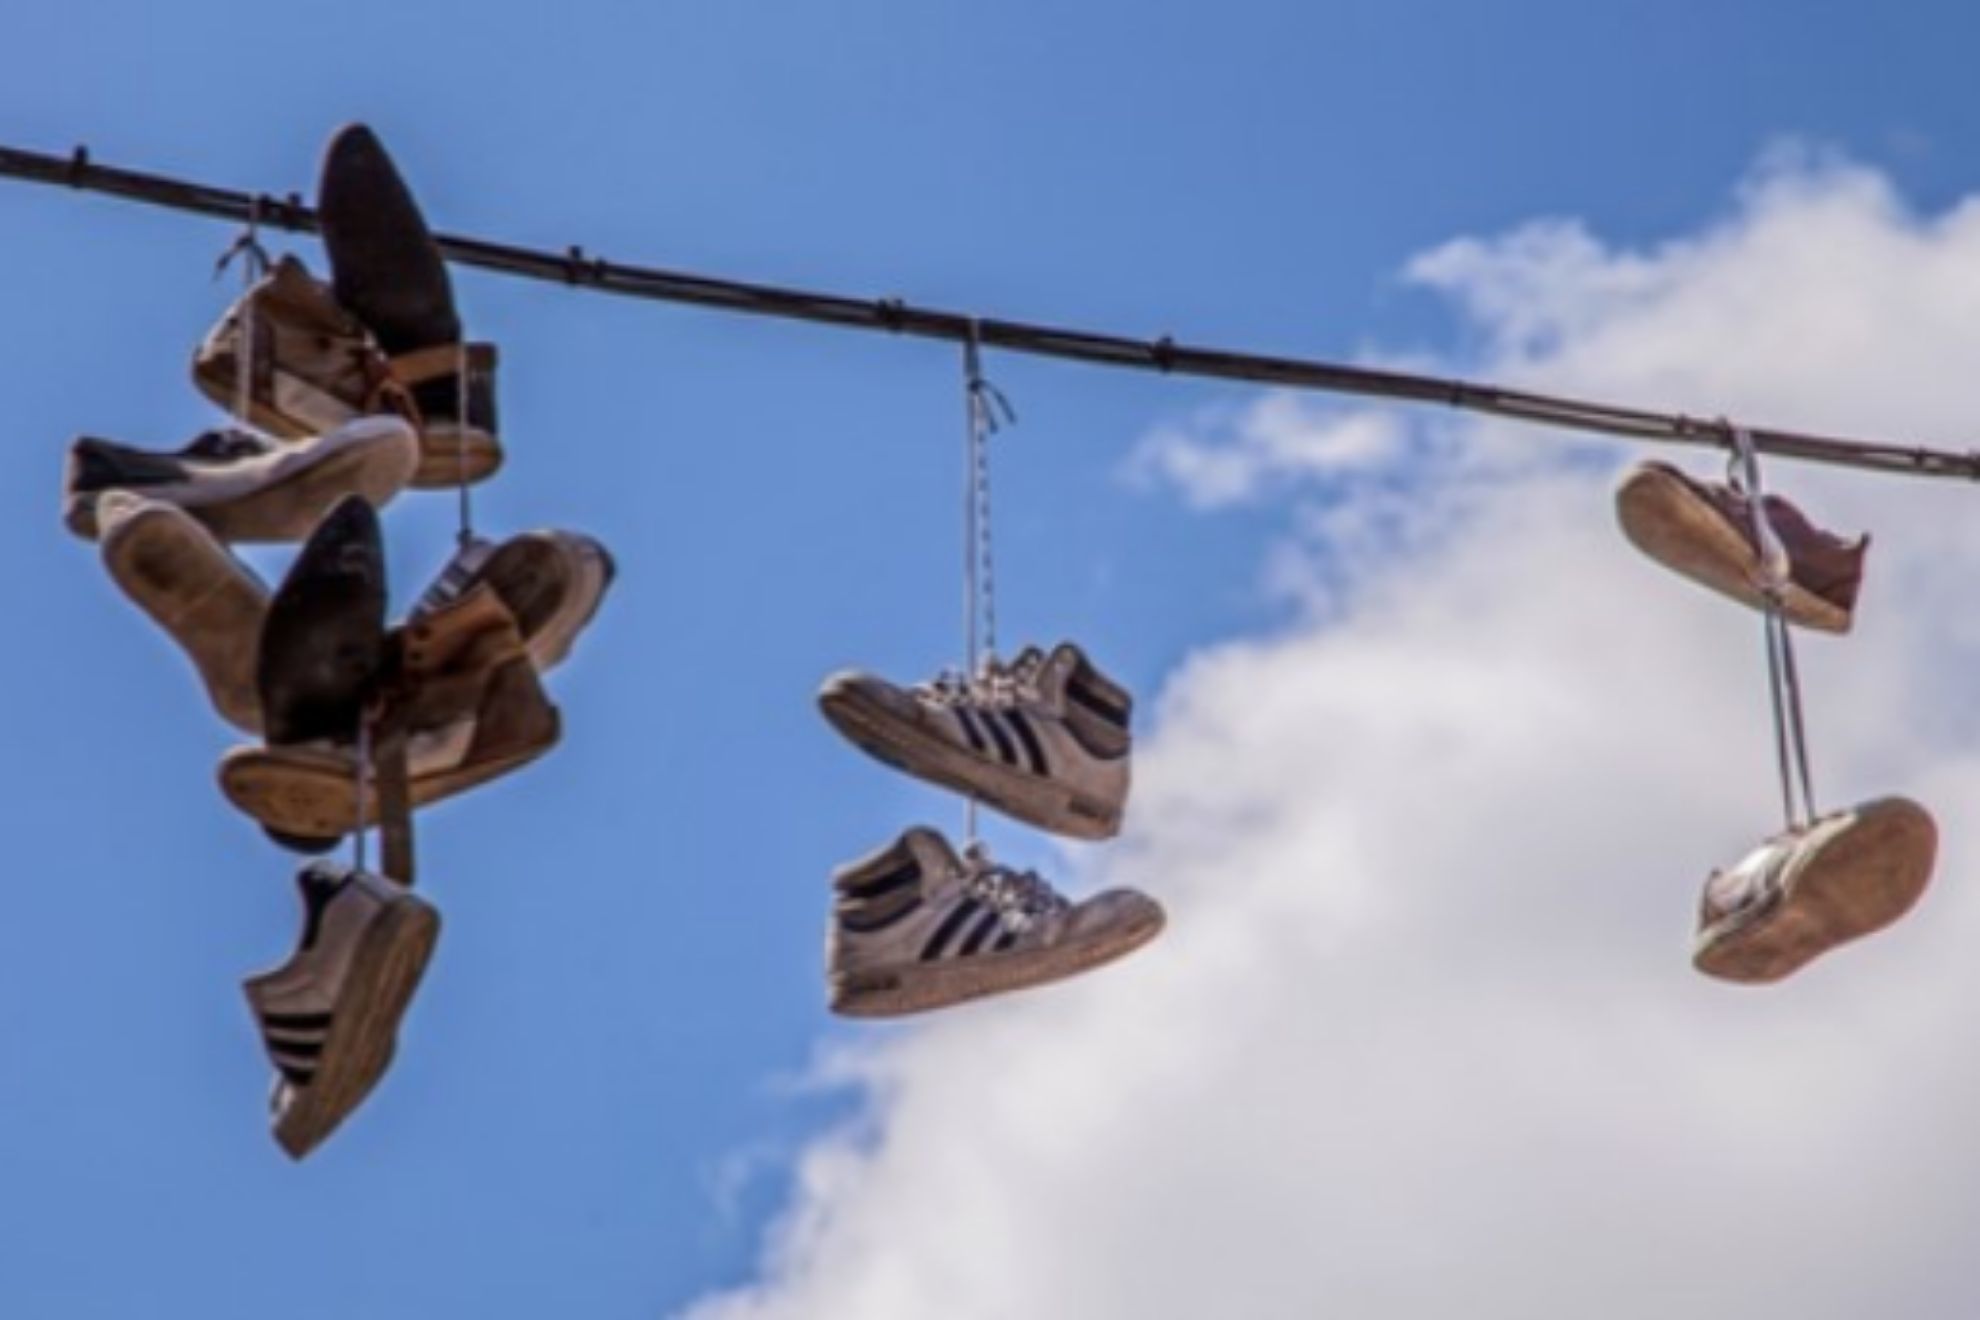 Shoefiti o la moda de colgar zapatos en los cables: La verdad detrs de esta extraa costumbre urbana